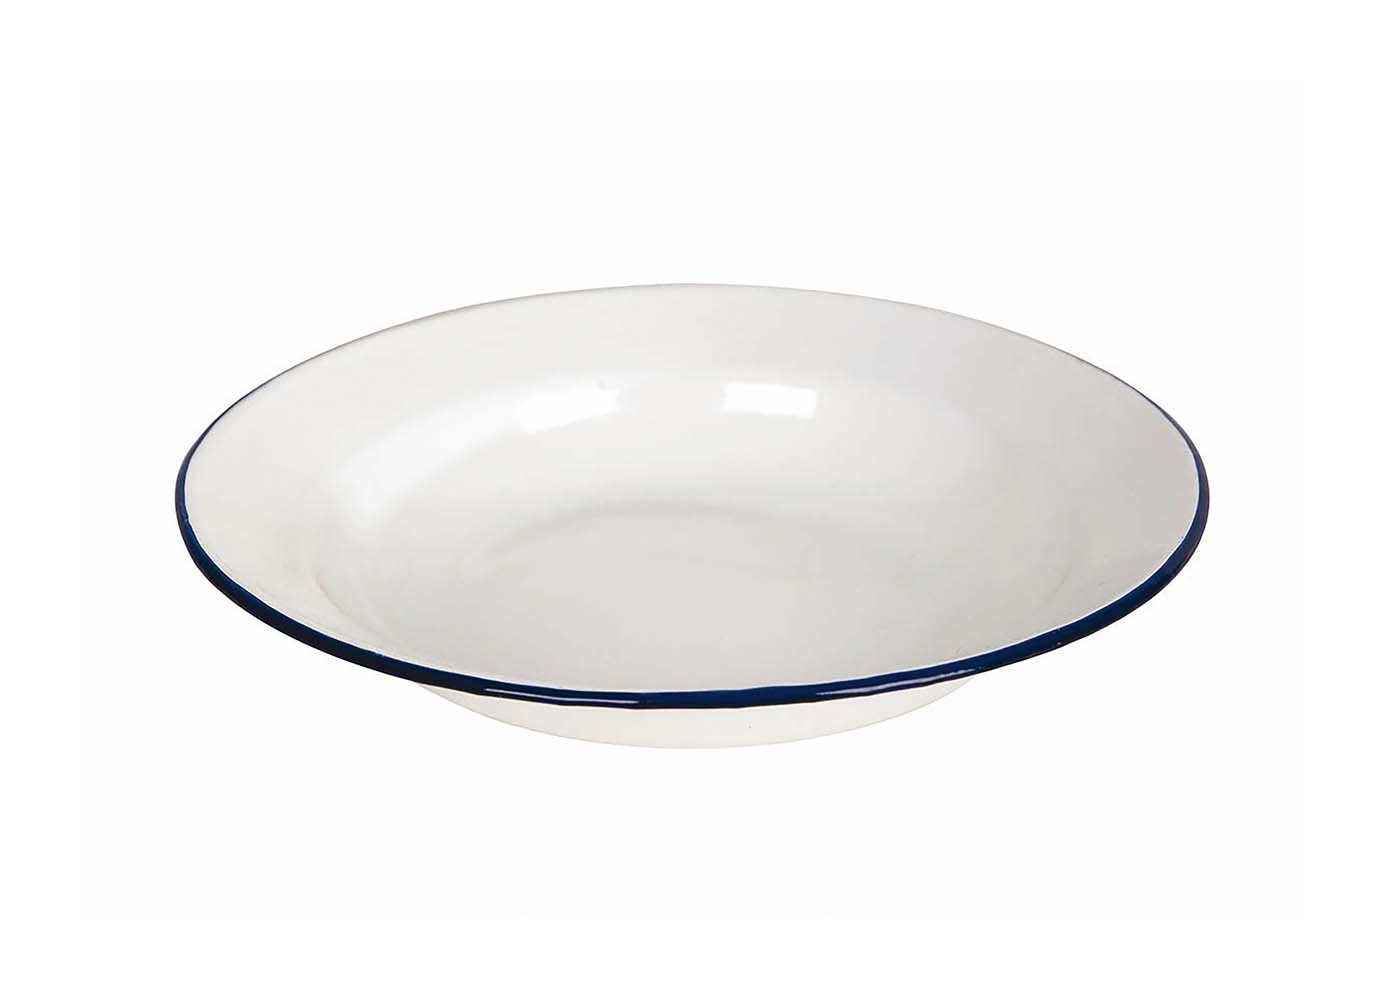 6101525 Un plato esmaltado profundo. Esta resistente placa de acero tiene una capa de esmalte, esta capa dura garantiza una higiene adicional y la robustez de la placa. El esmalte también es inflamable y duradero. El plato está decorado con un borde azul.